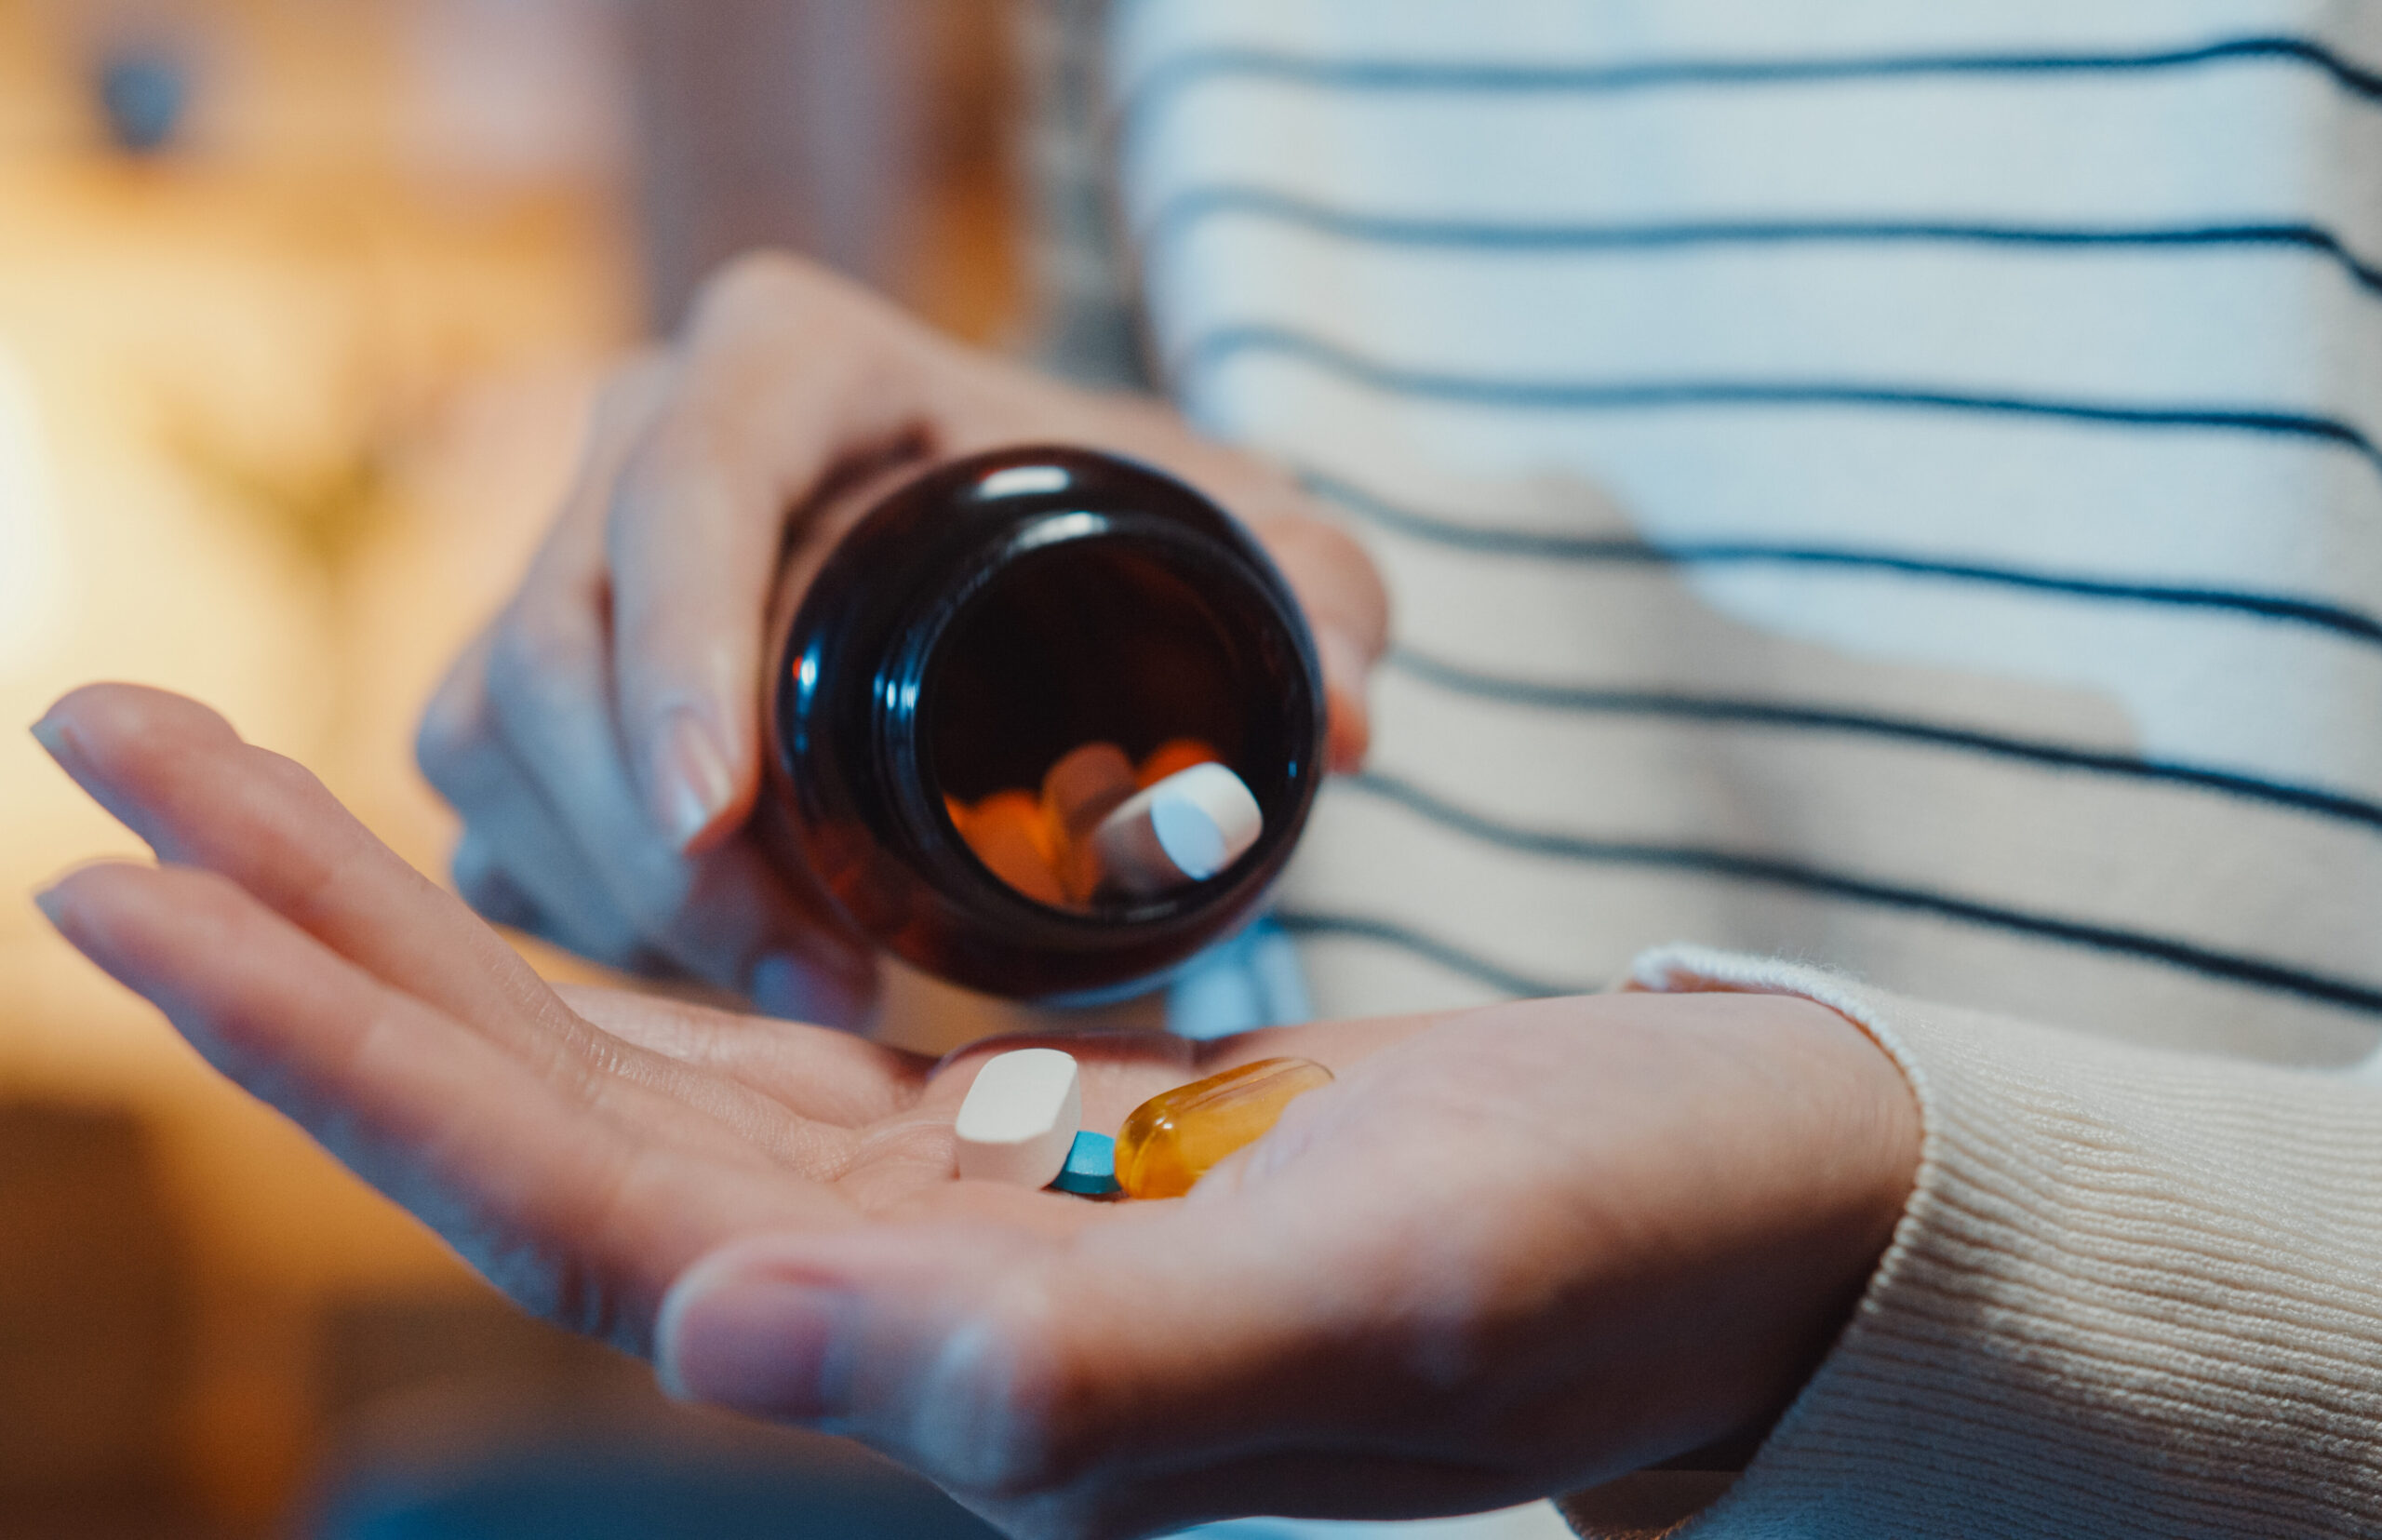 CMS Announces Summer Update Window for Prescription Drug Plans